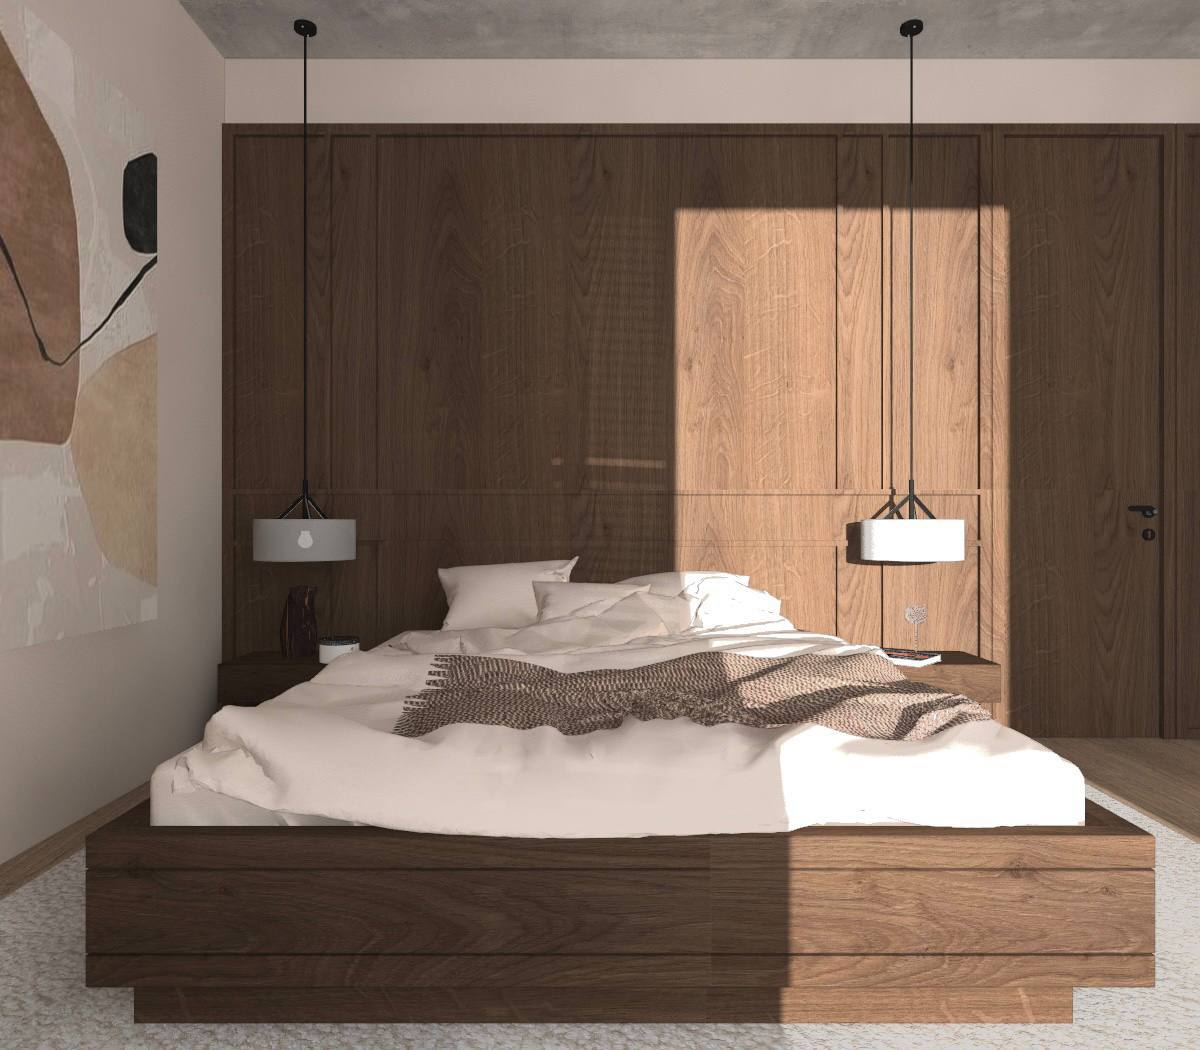 Современная минималистская гостиная с чистыми линиями и нейтральными цветами